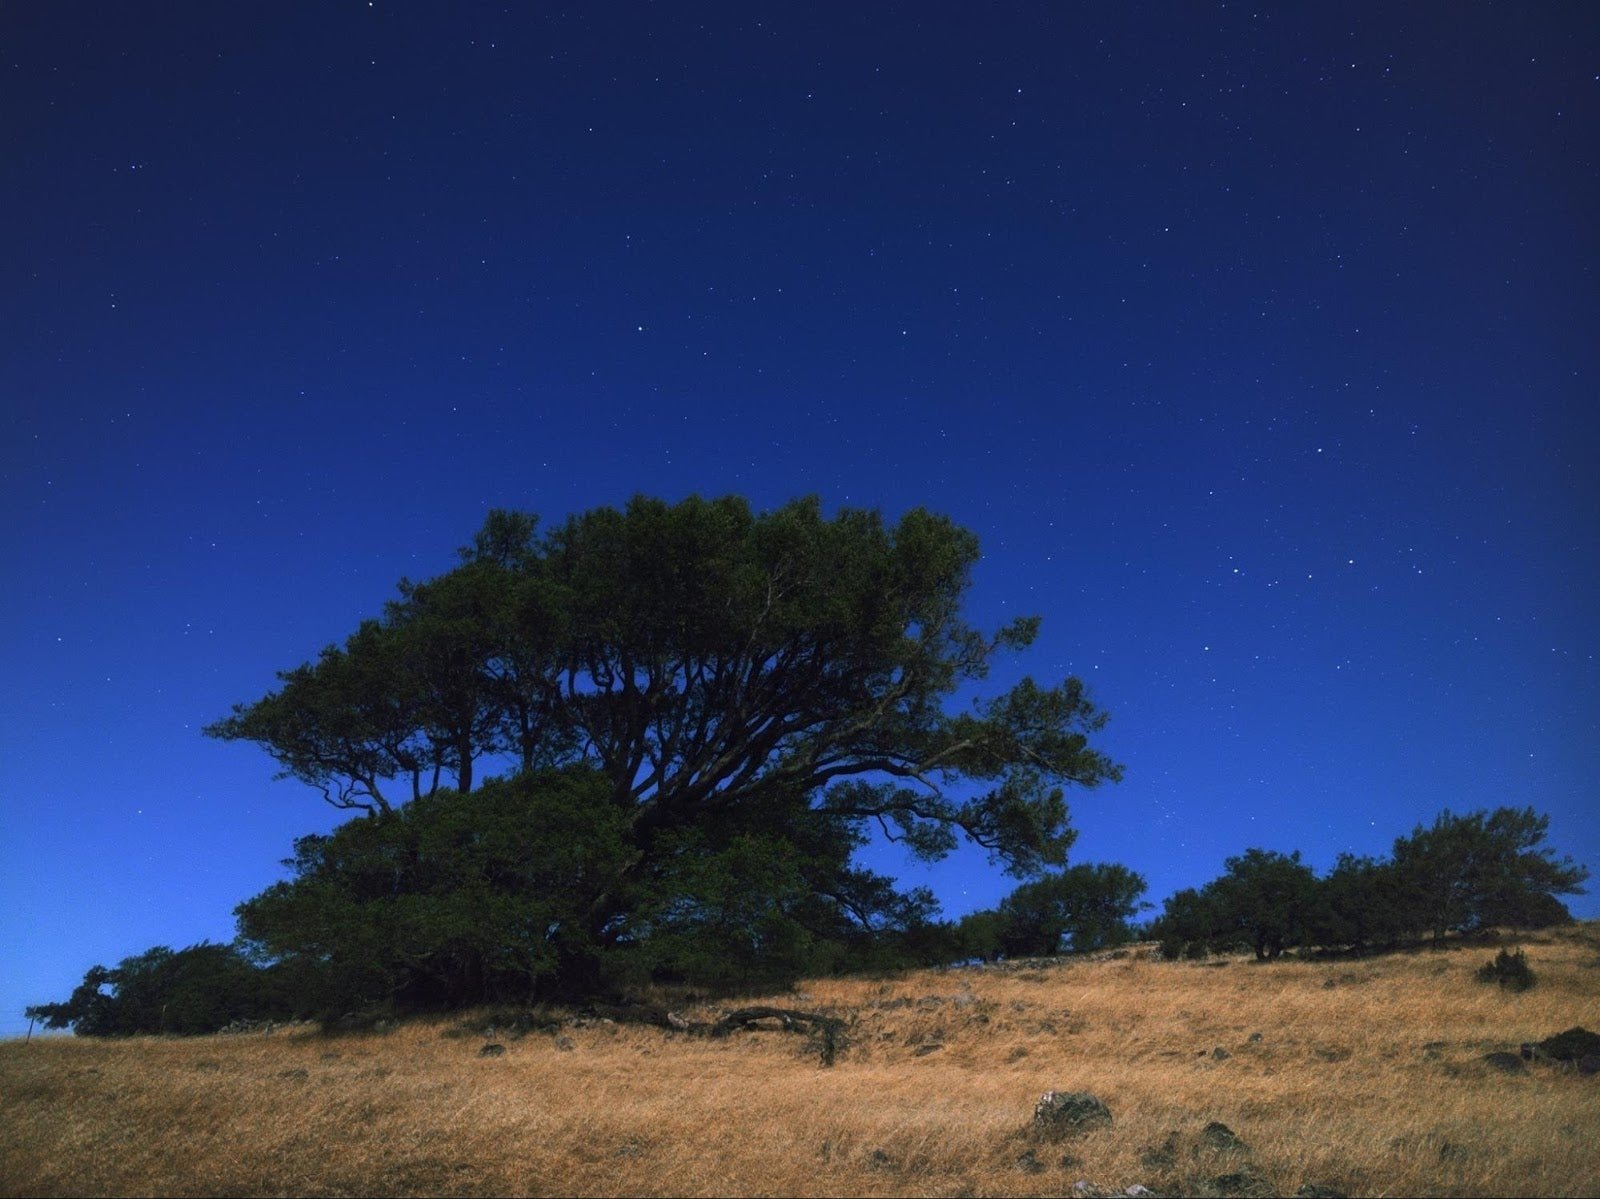 Estas fotos nocturnas tan espectaculares se han sacado con un Pixel y un Nexus 6P